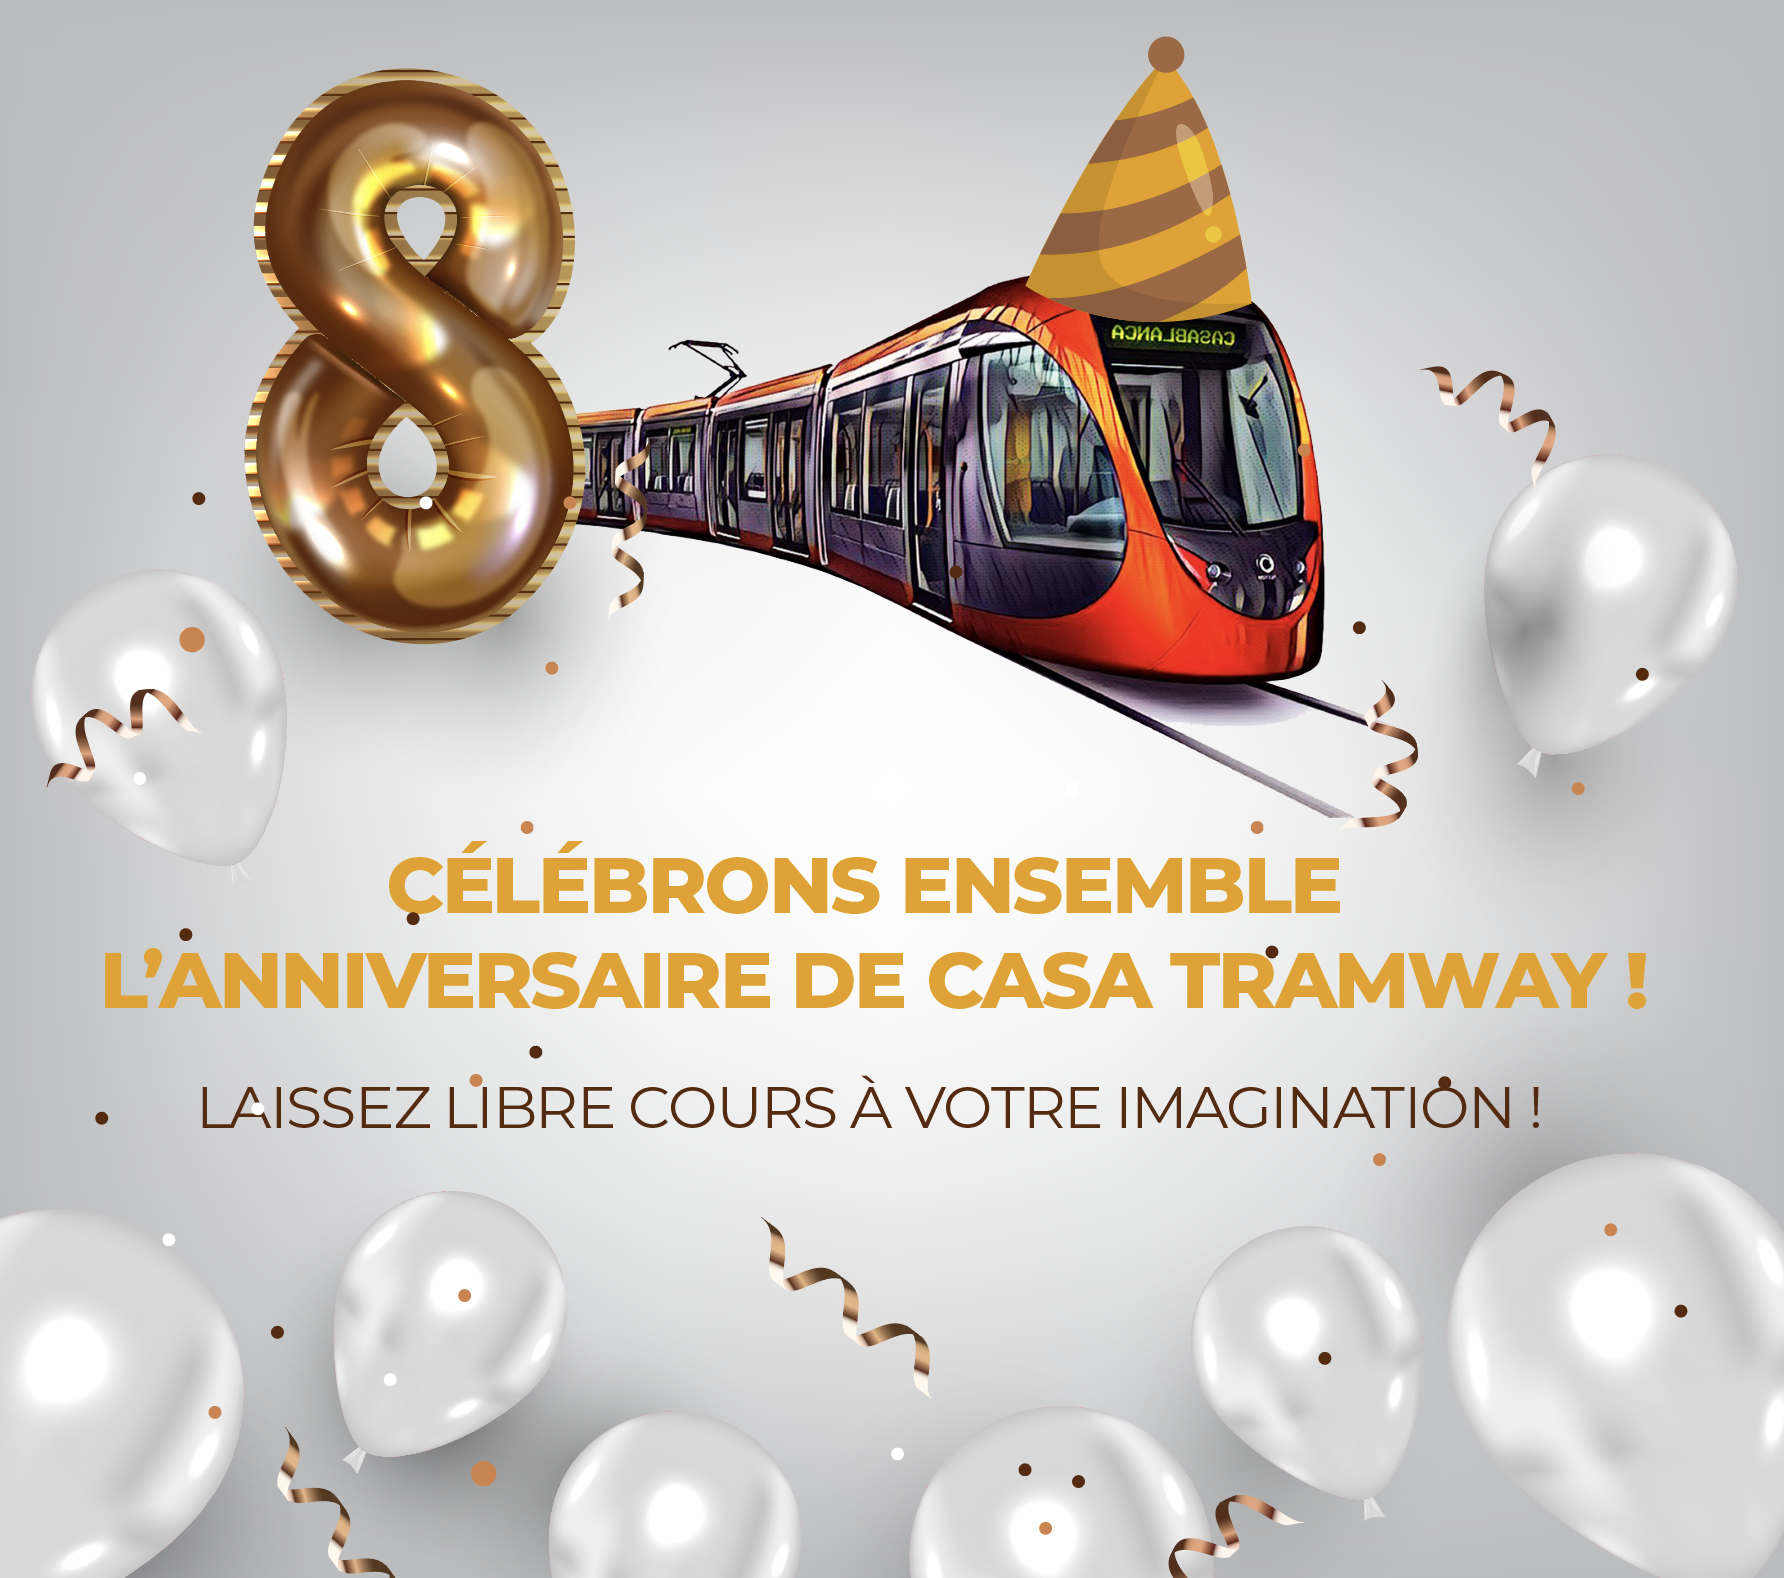 Les Casablancais souhaitent un joyeux 8ème anniversaire à Casatramway